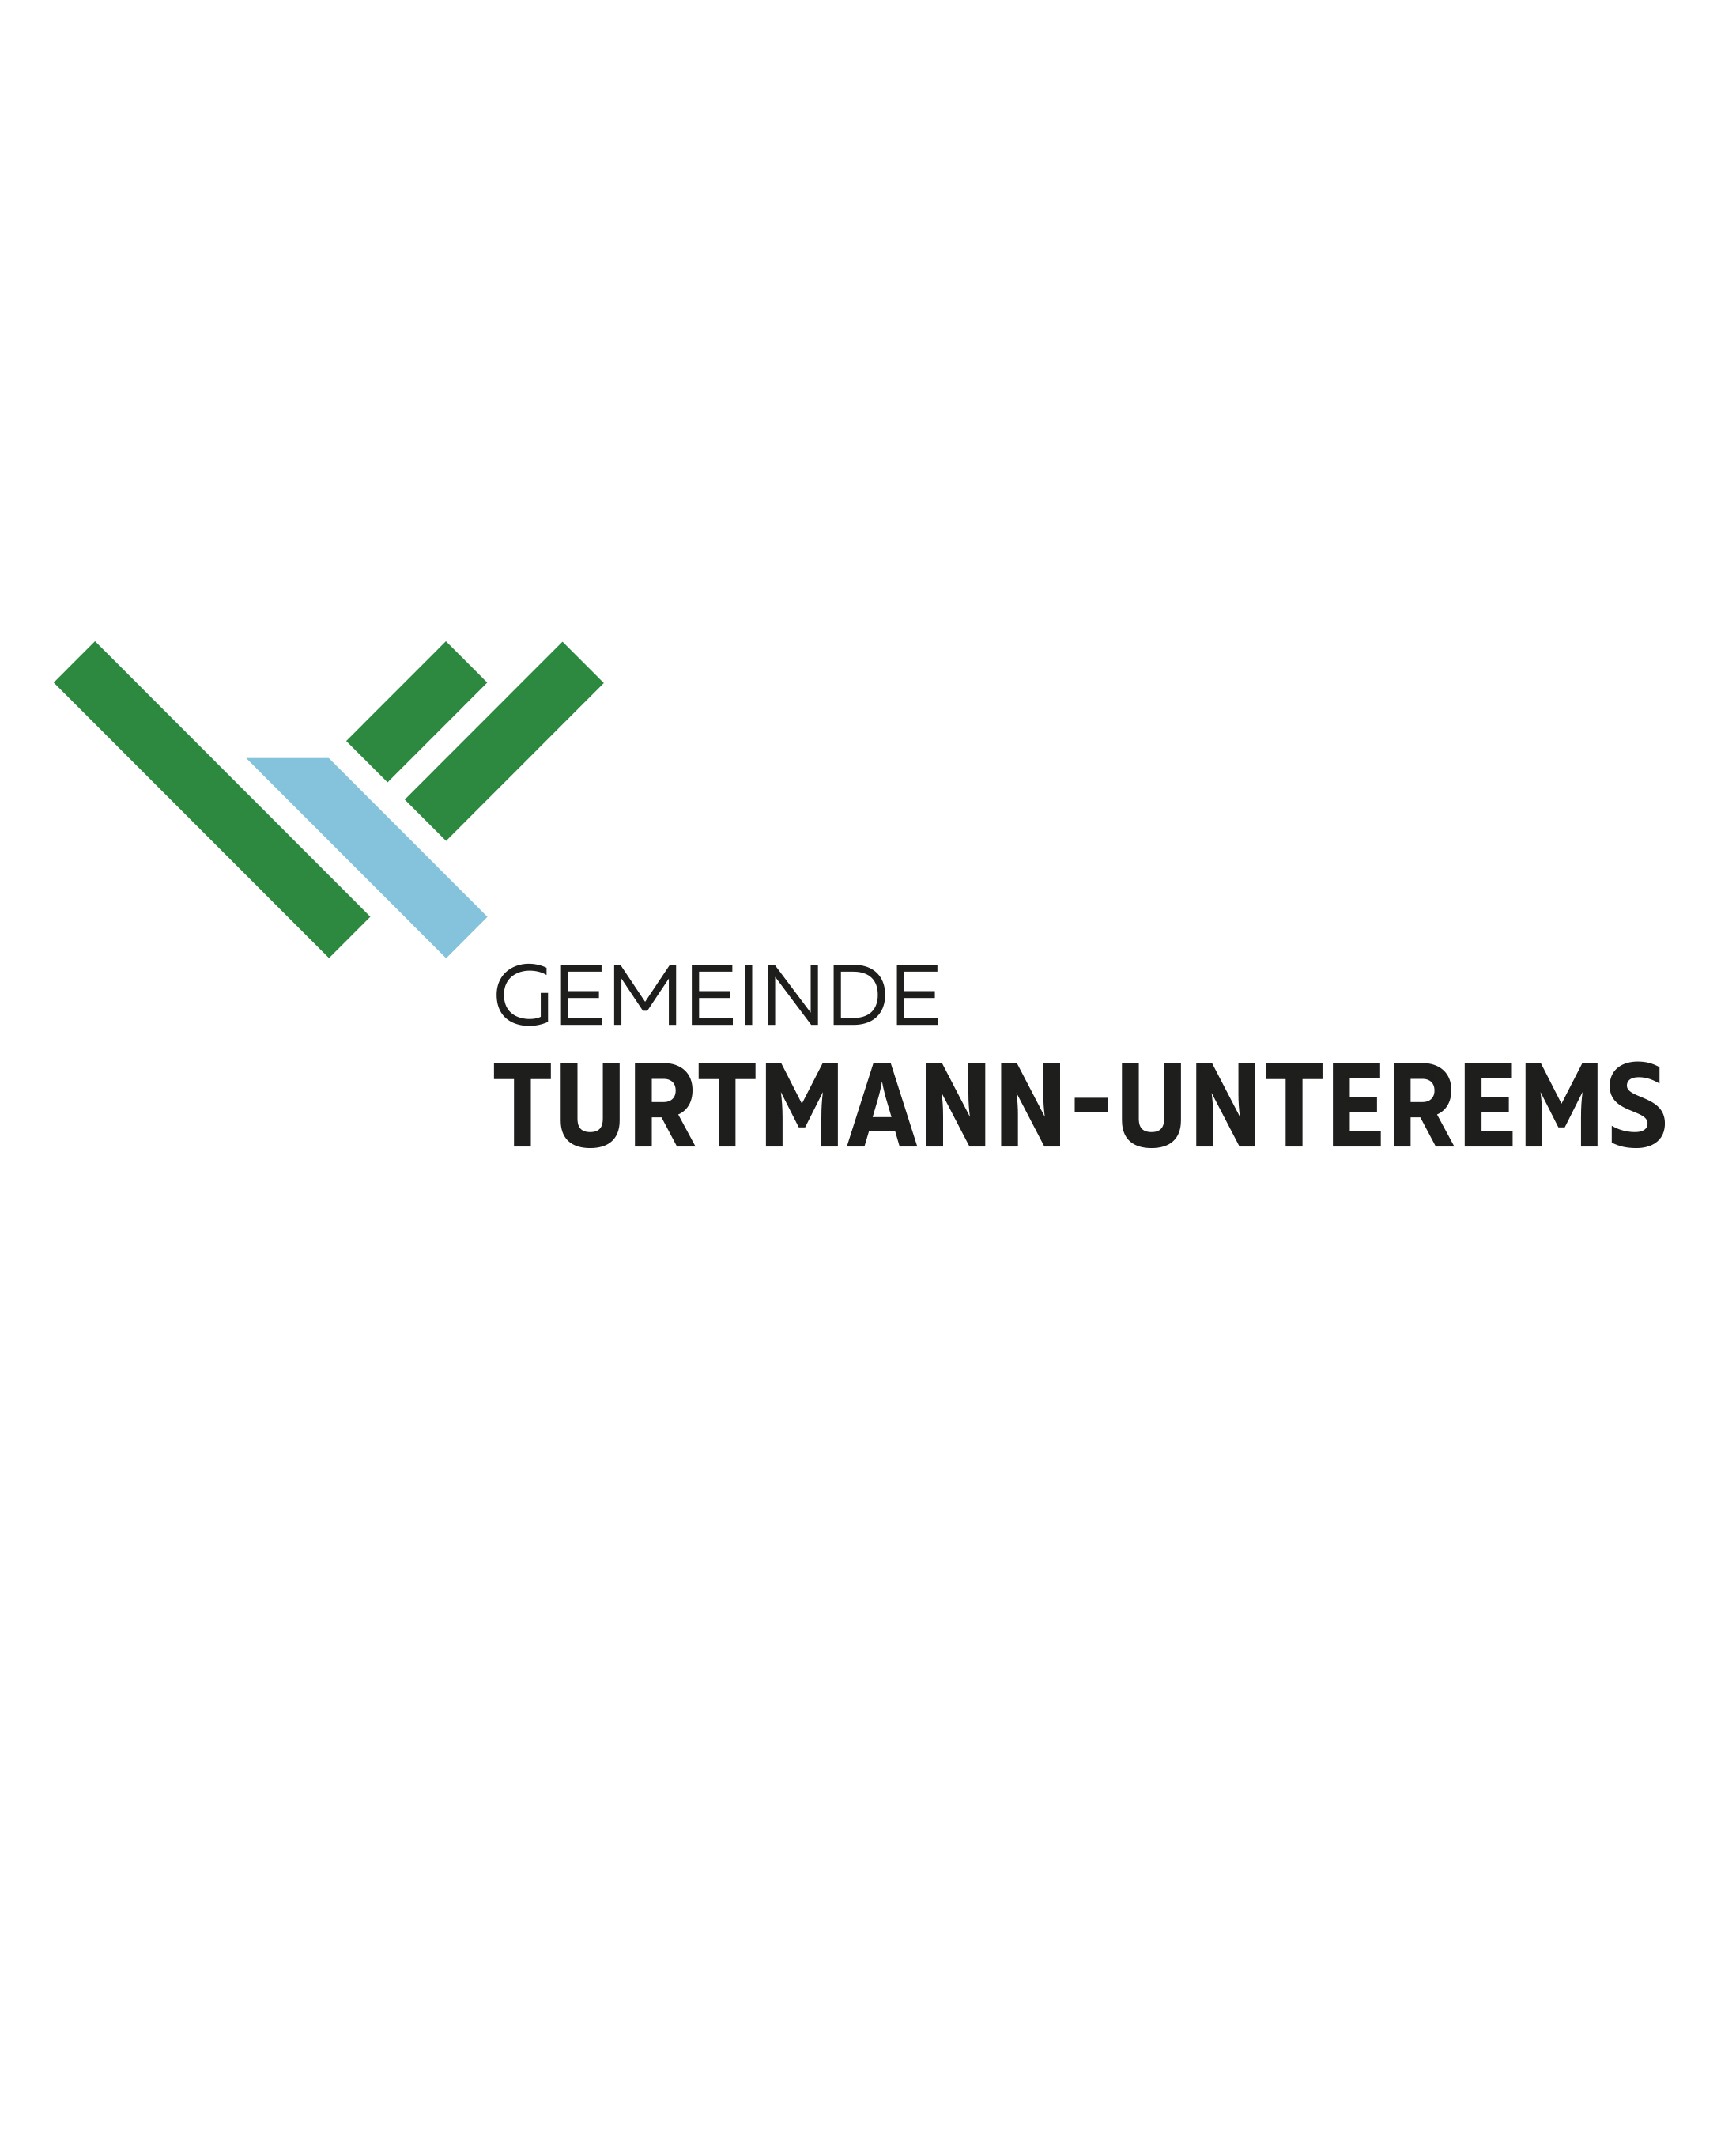 Gemeinde Turtmann-Unterems Logo